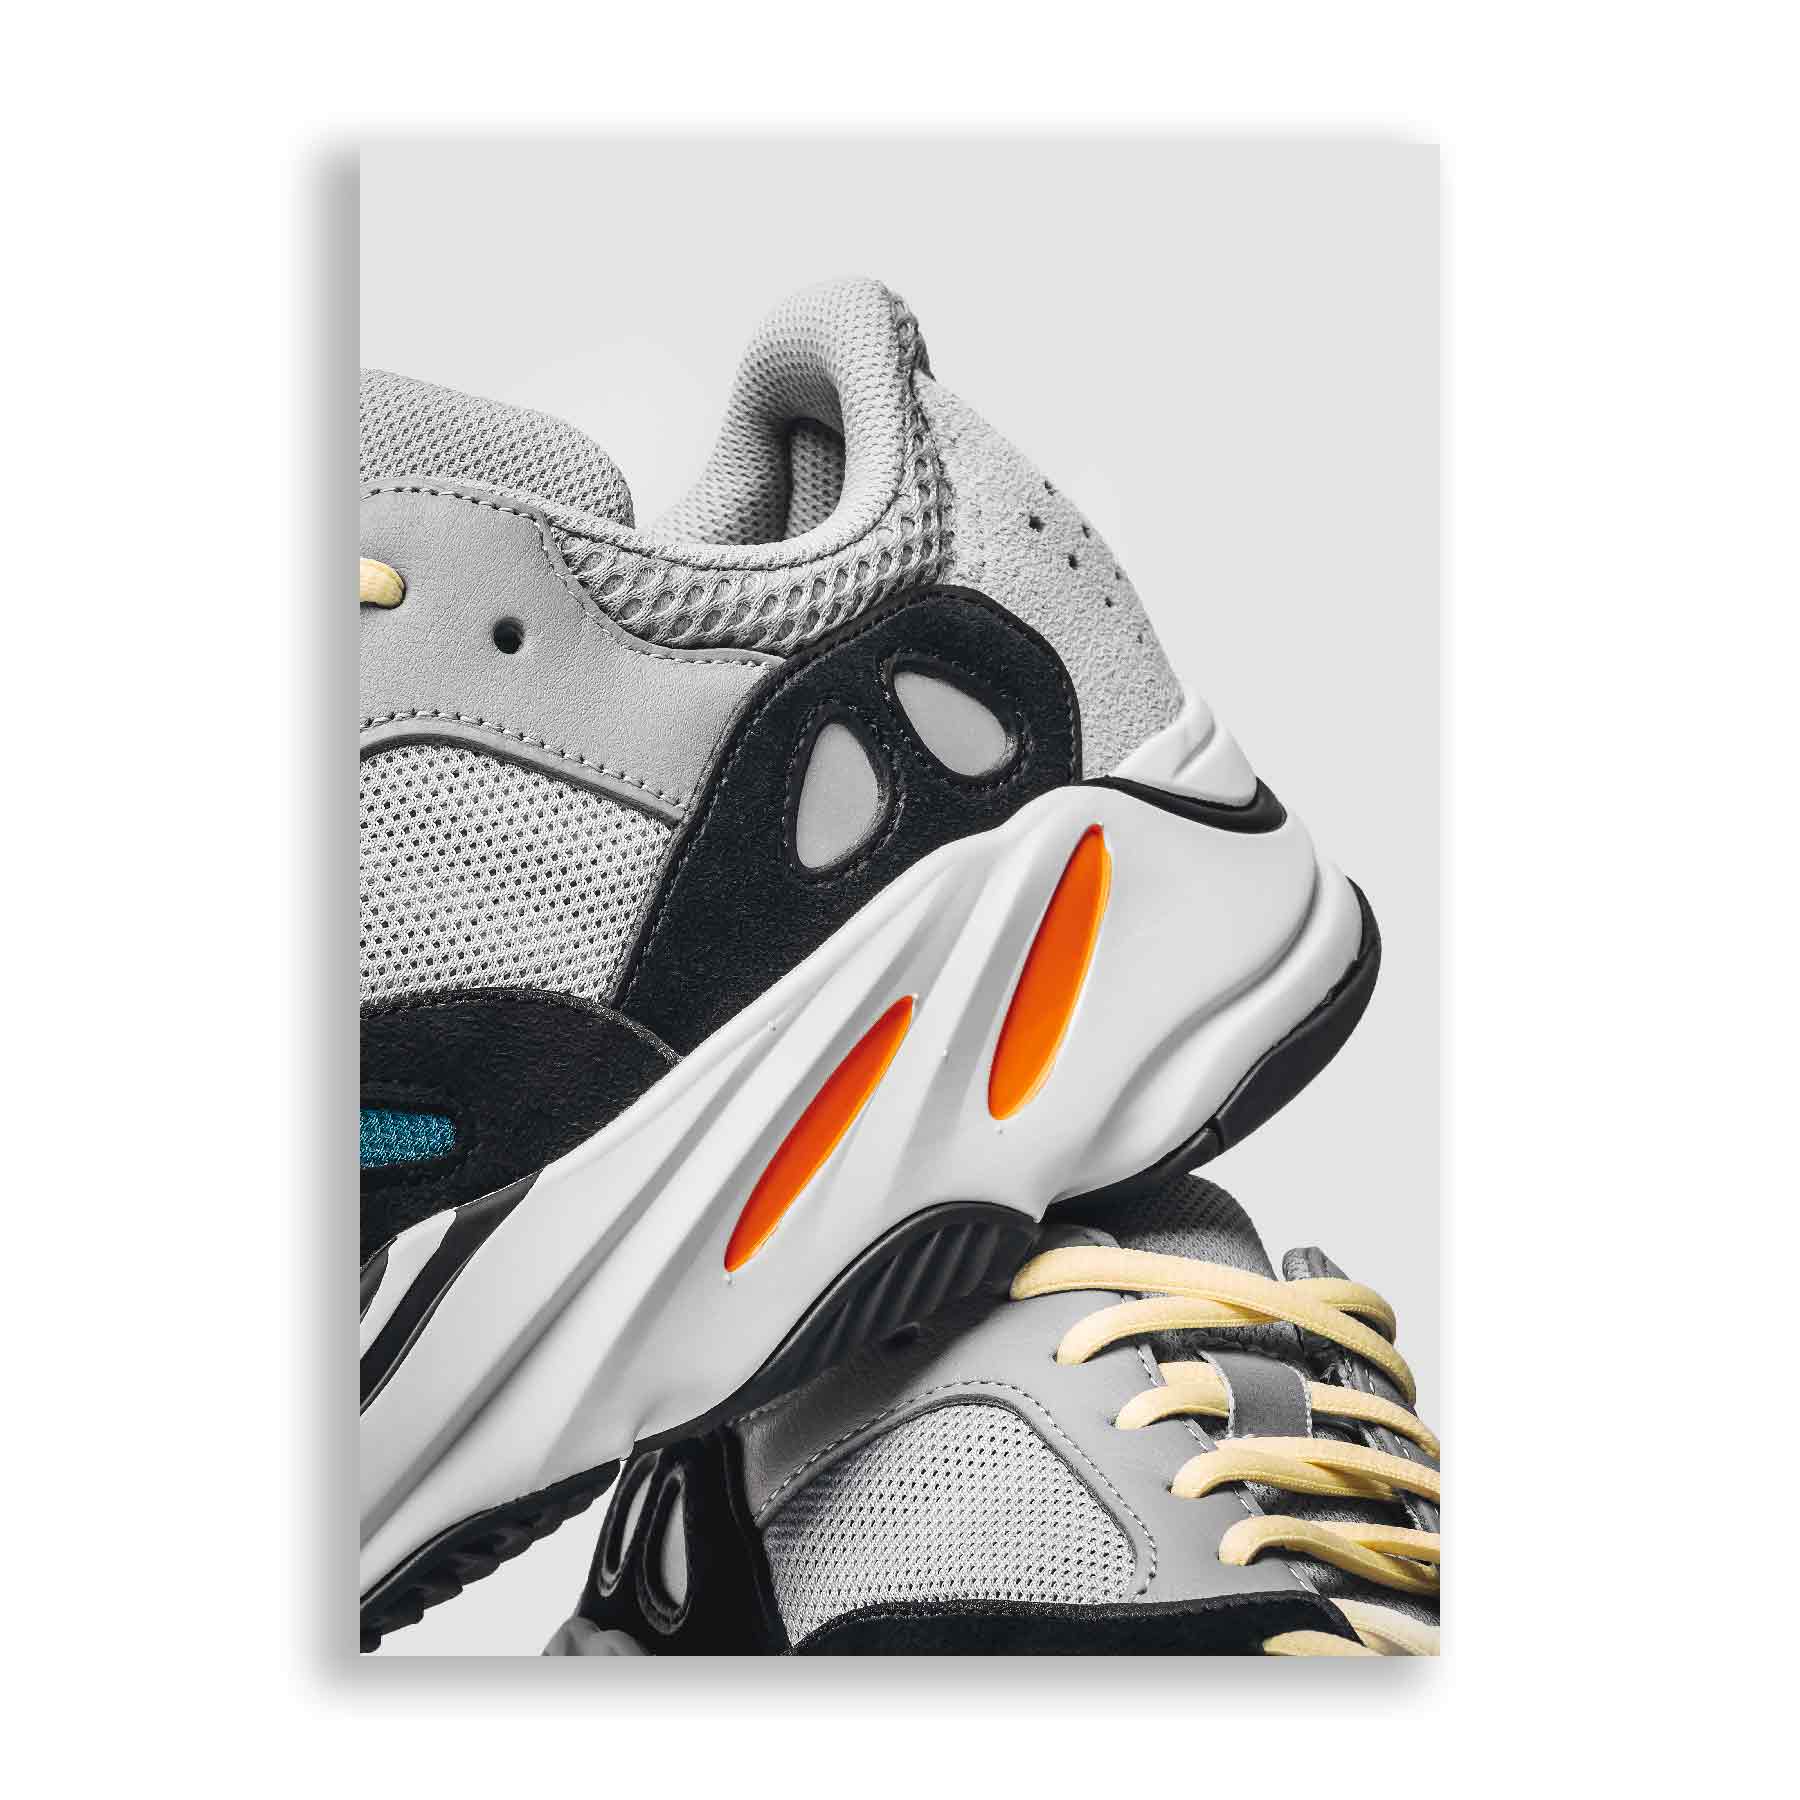 Draad Democratie onderdak SnkrsPrints | Yeezy 700 Wave Runner Sneaker Poster